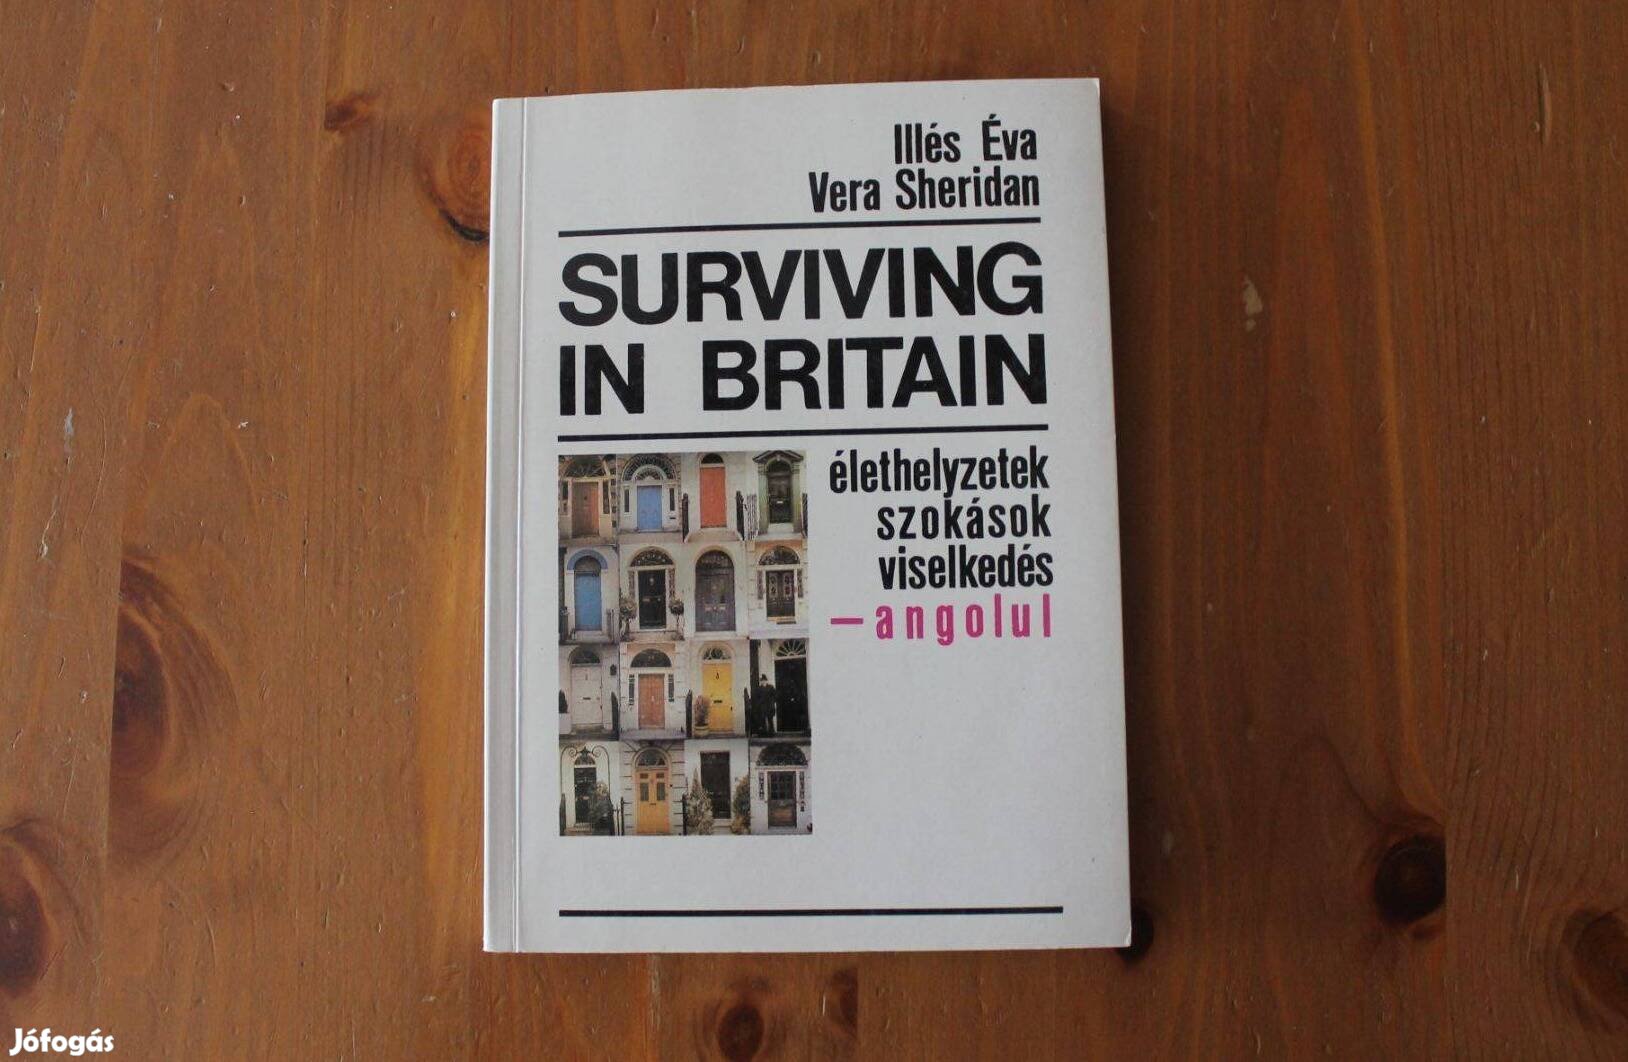 Surviving in Britain - Élethelyzetek, szokások, viselkedés angolul